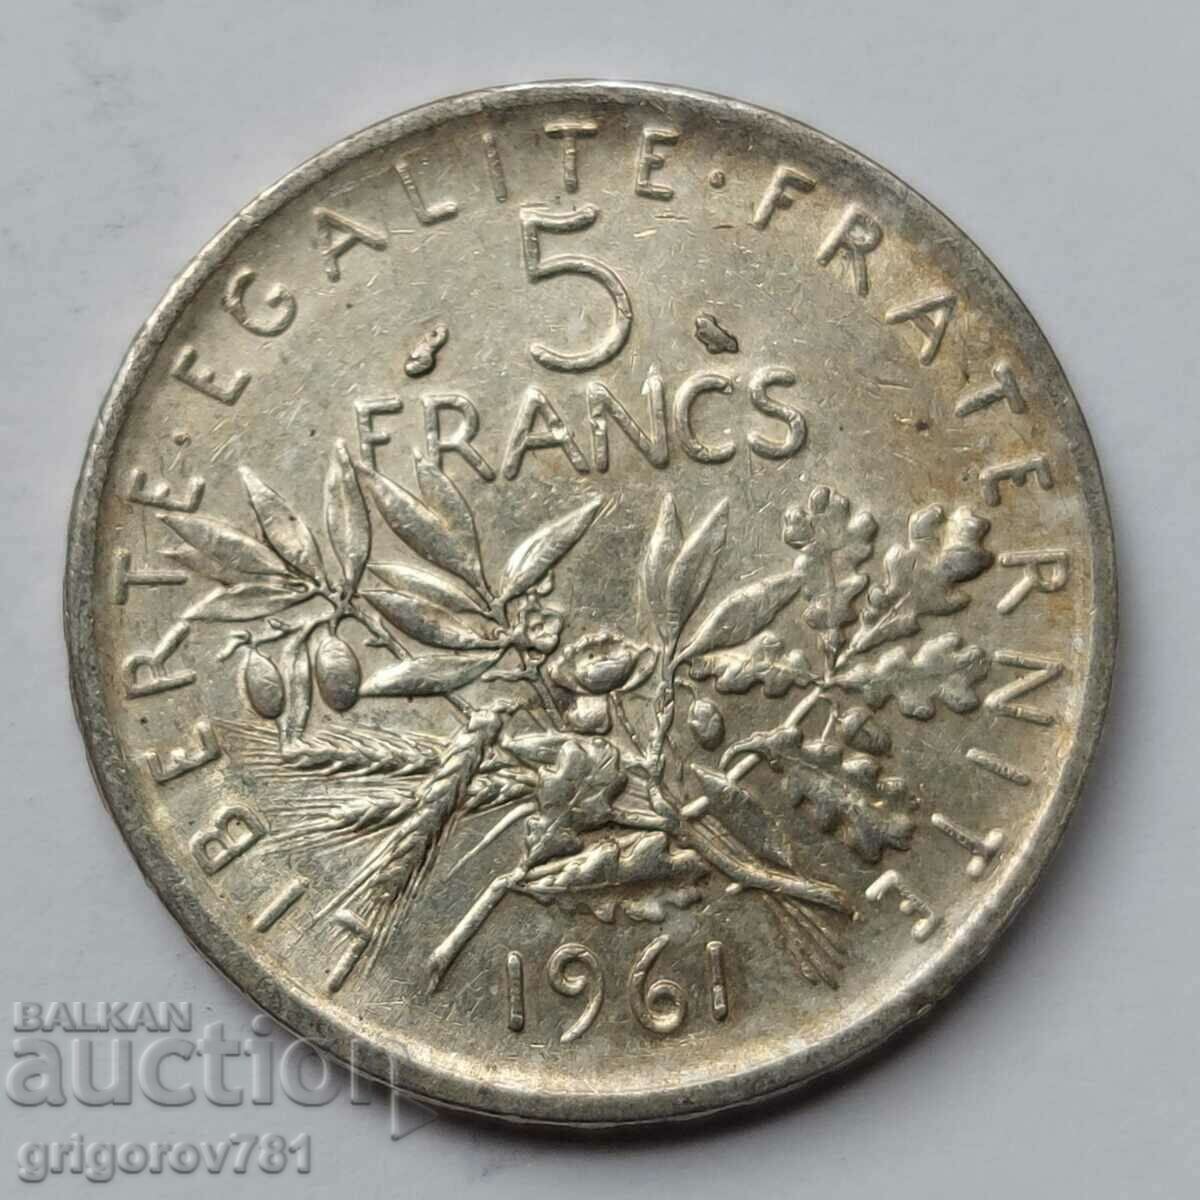 5 Φράγκα Ασήμι Γαλλία 1961 - Ασημένιο νόμισμα #3